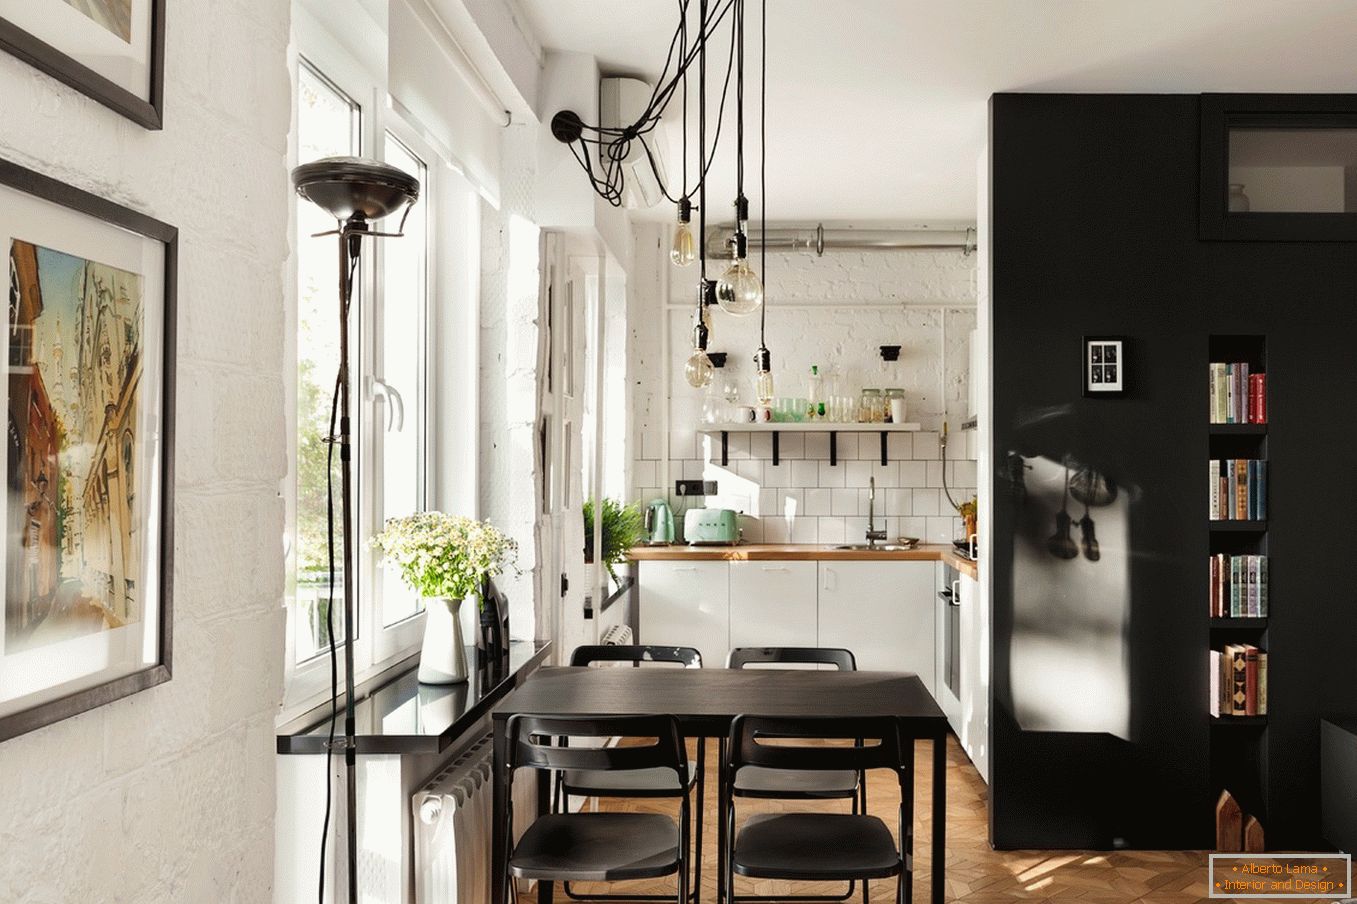 Egy kis konyha kialakítása fekete-fehérben